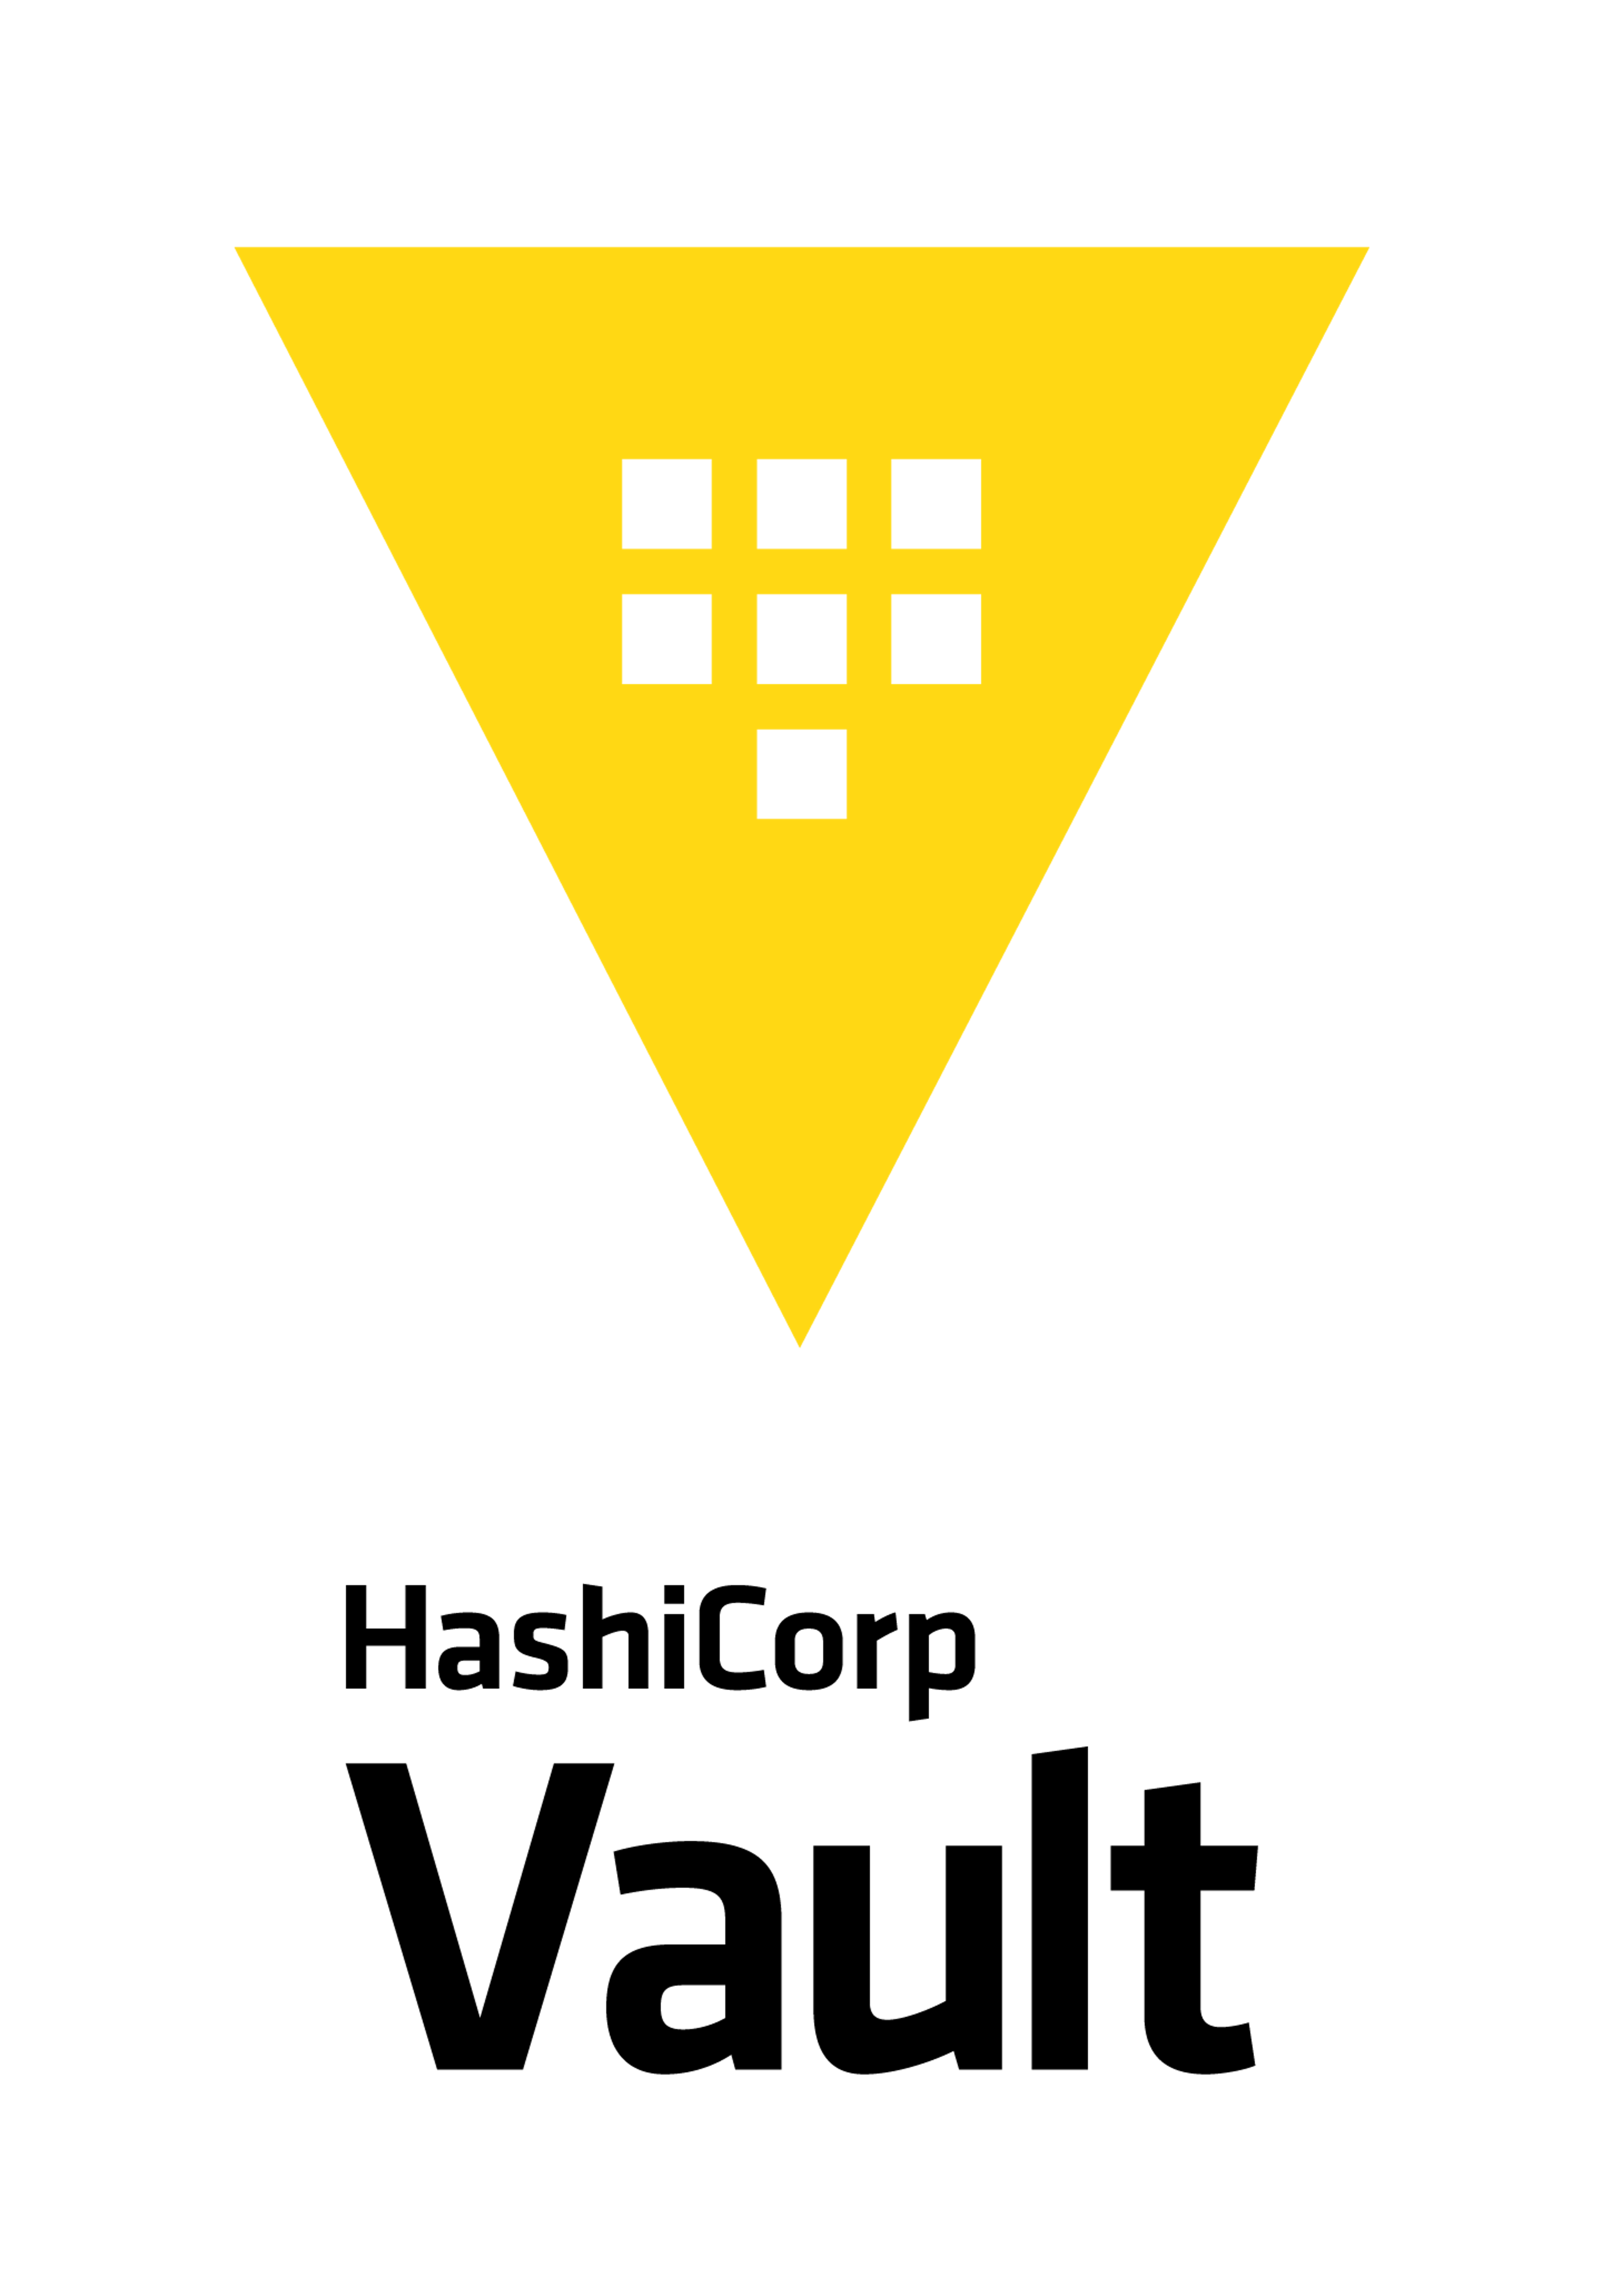 Vault Logo